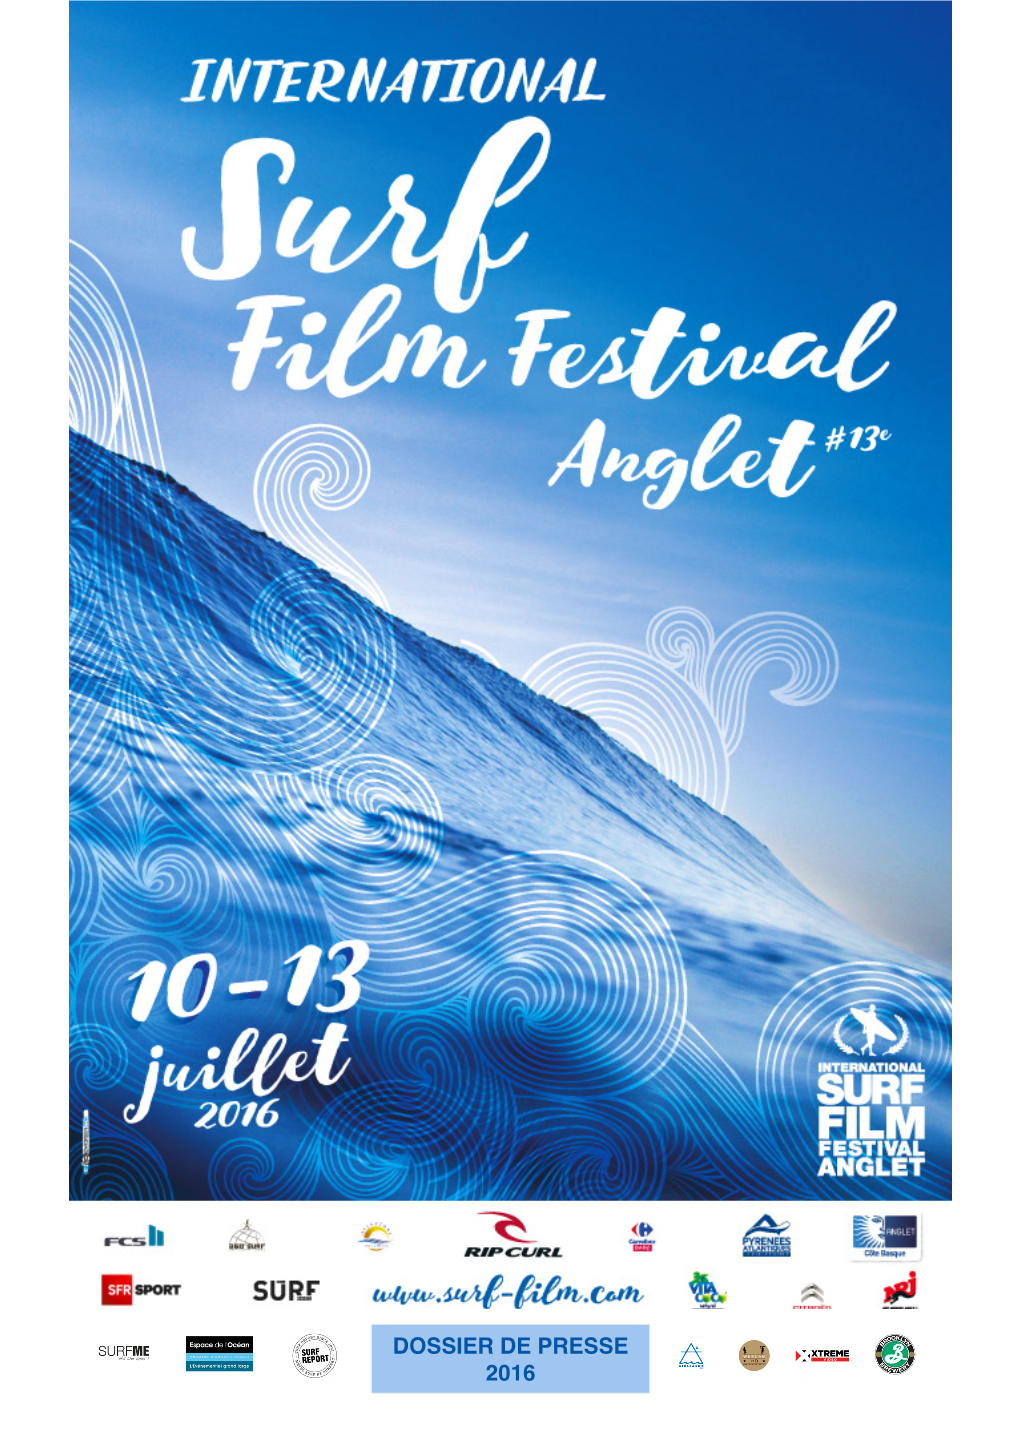 DOSSIER DE PRESSE 2016 BIENVENUE À LA 13Ème ÉDITION DE L’INTERNATIONAL SURF FILM FESTIVAL D’ANGLET !